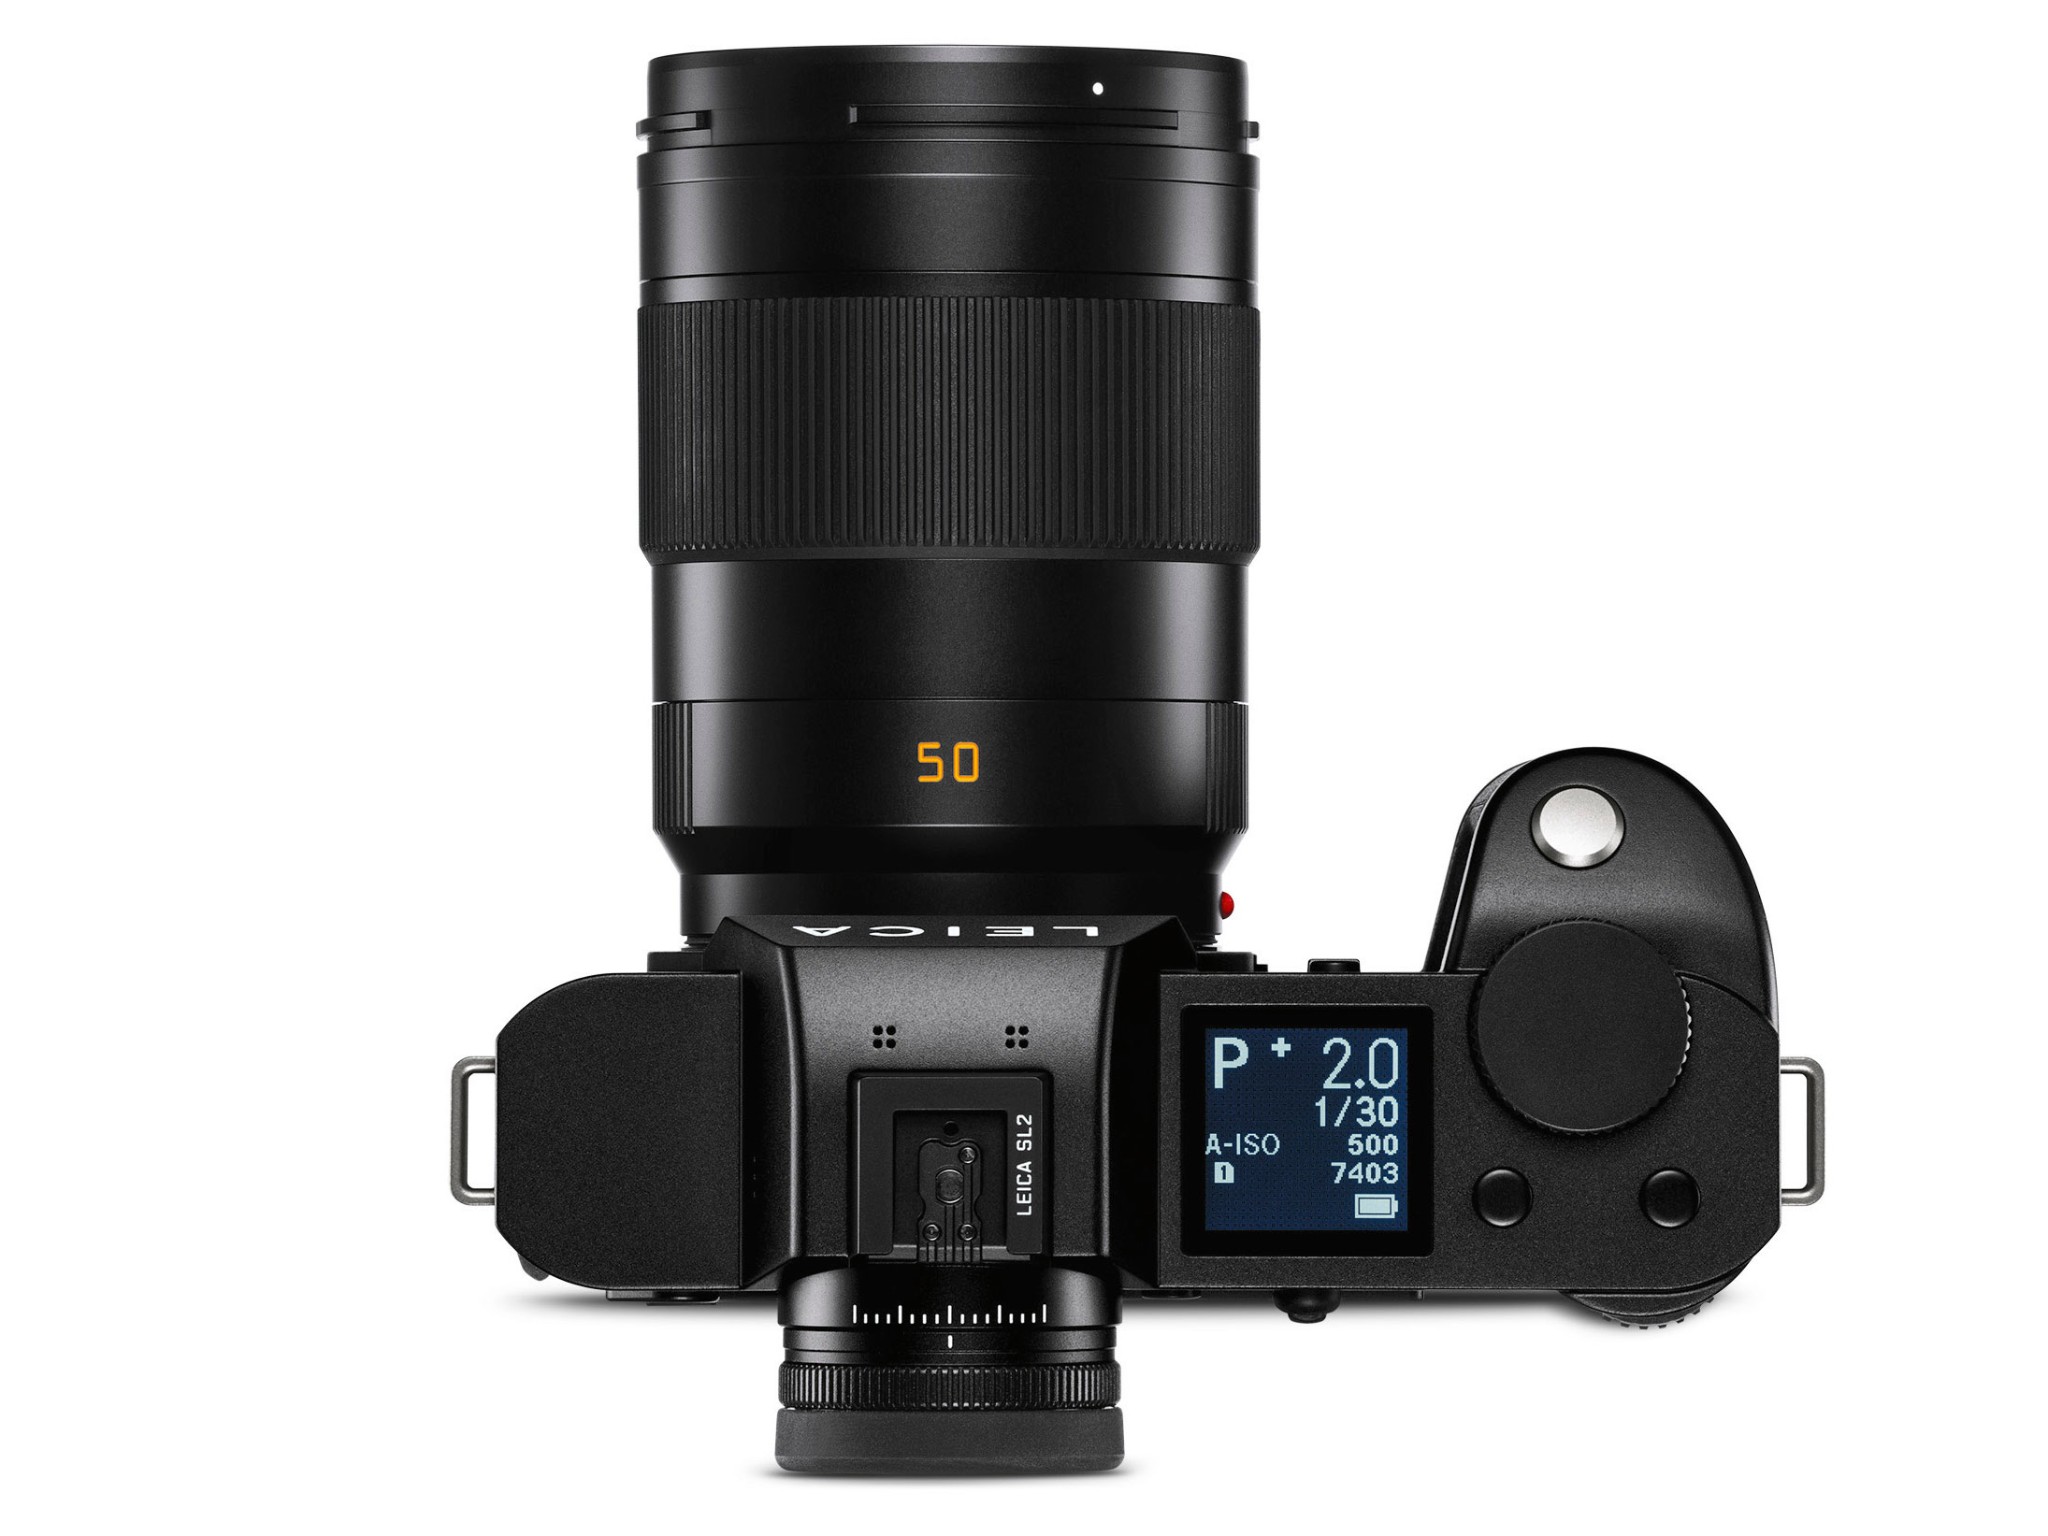 Leica SL2 – máy ảnh fullframe tinh tế, tích hợp chống rung trong body, tốc độ chụp lớn và có khả năng quay video